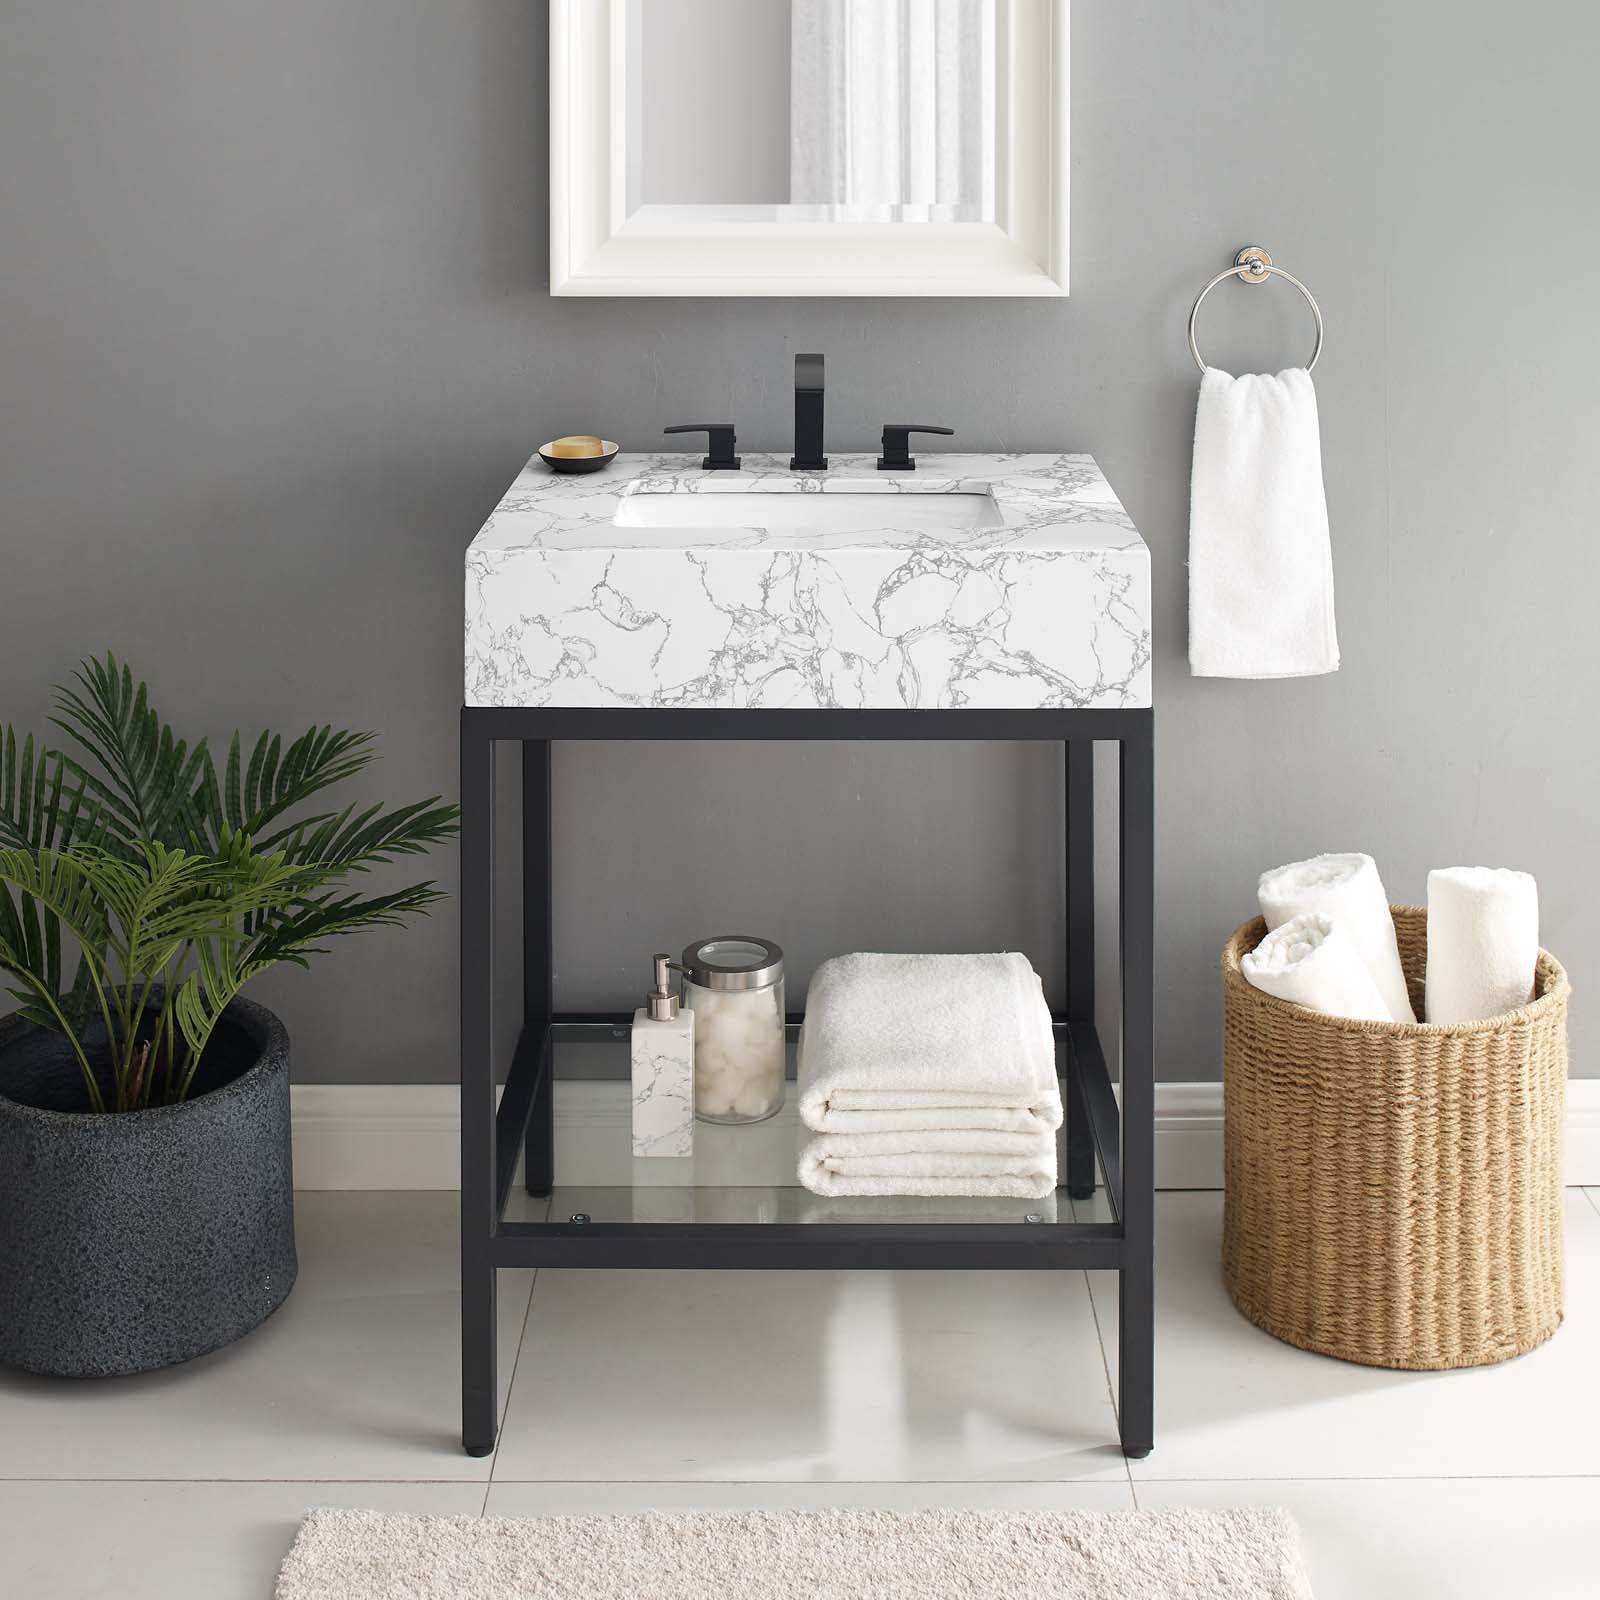 Kingsley 26" Black Stainless Steel Bathroom Vanity - East Shore Modern Home Furnishings